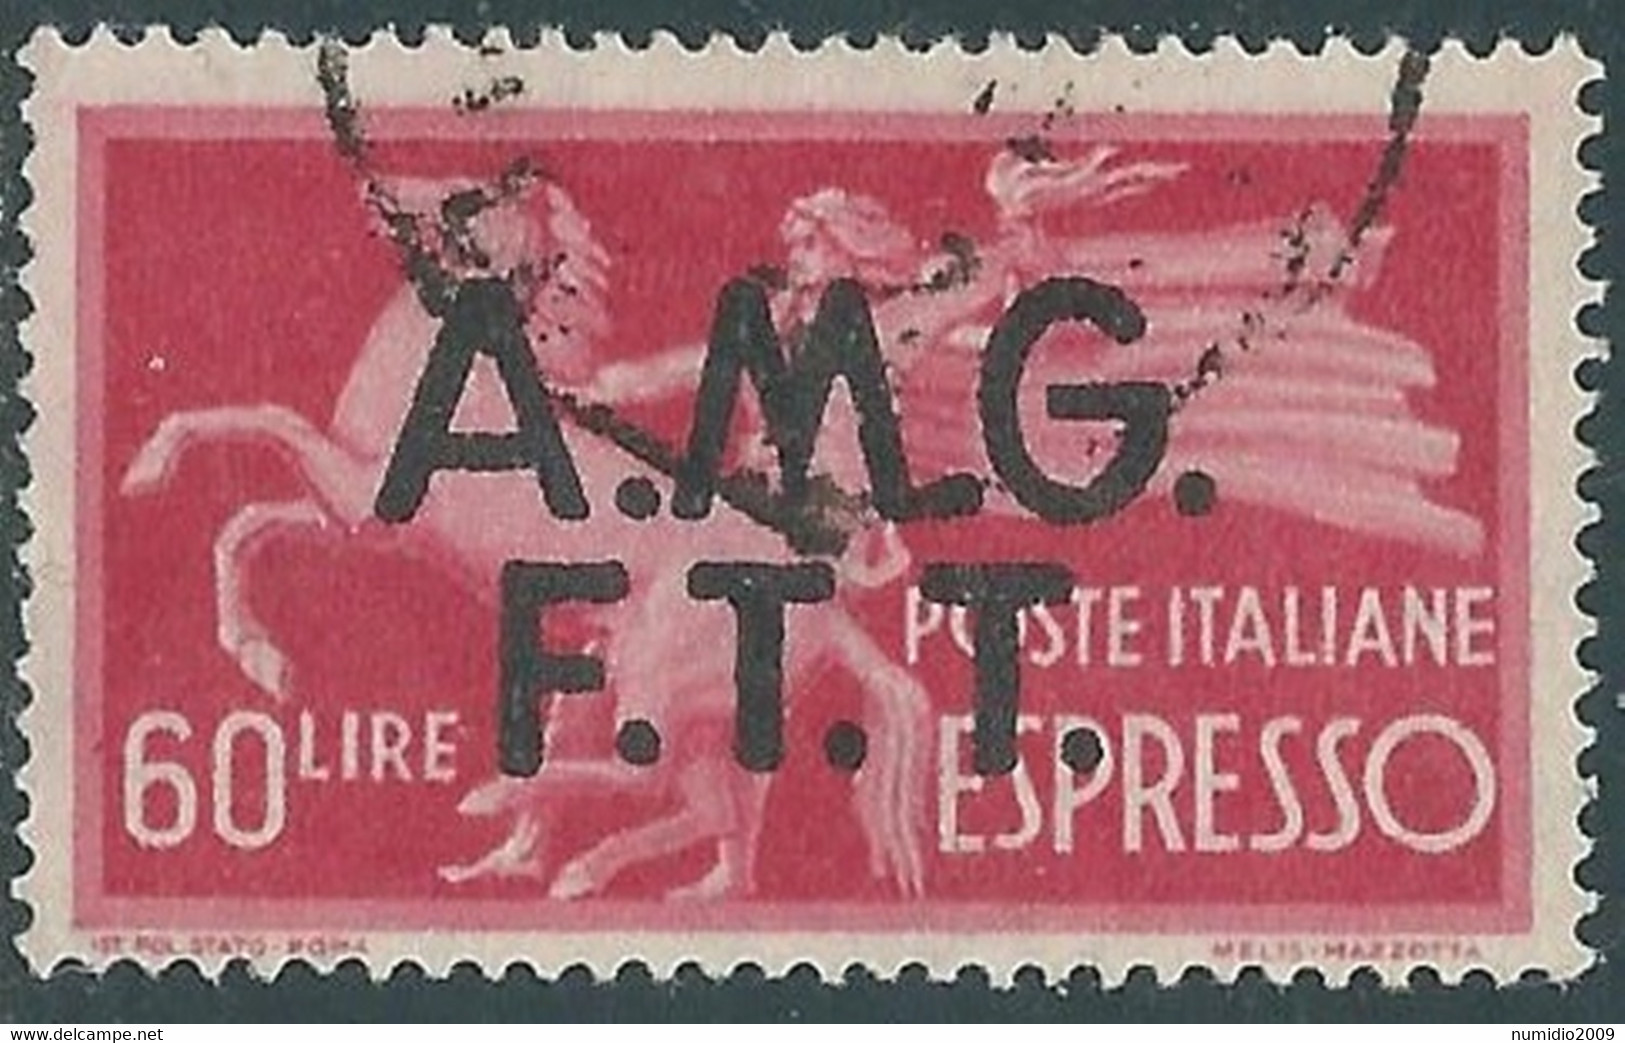 1947-48 TRIESTE A ESPRESSO USATO DEMOCRATICA 60 LIRE - RC9-2 - Express Mail